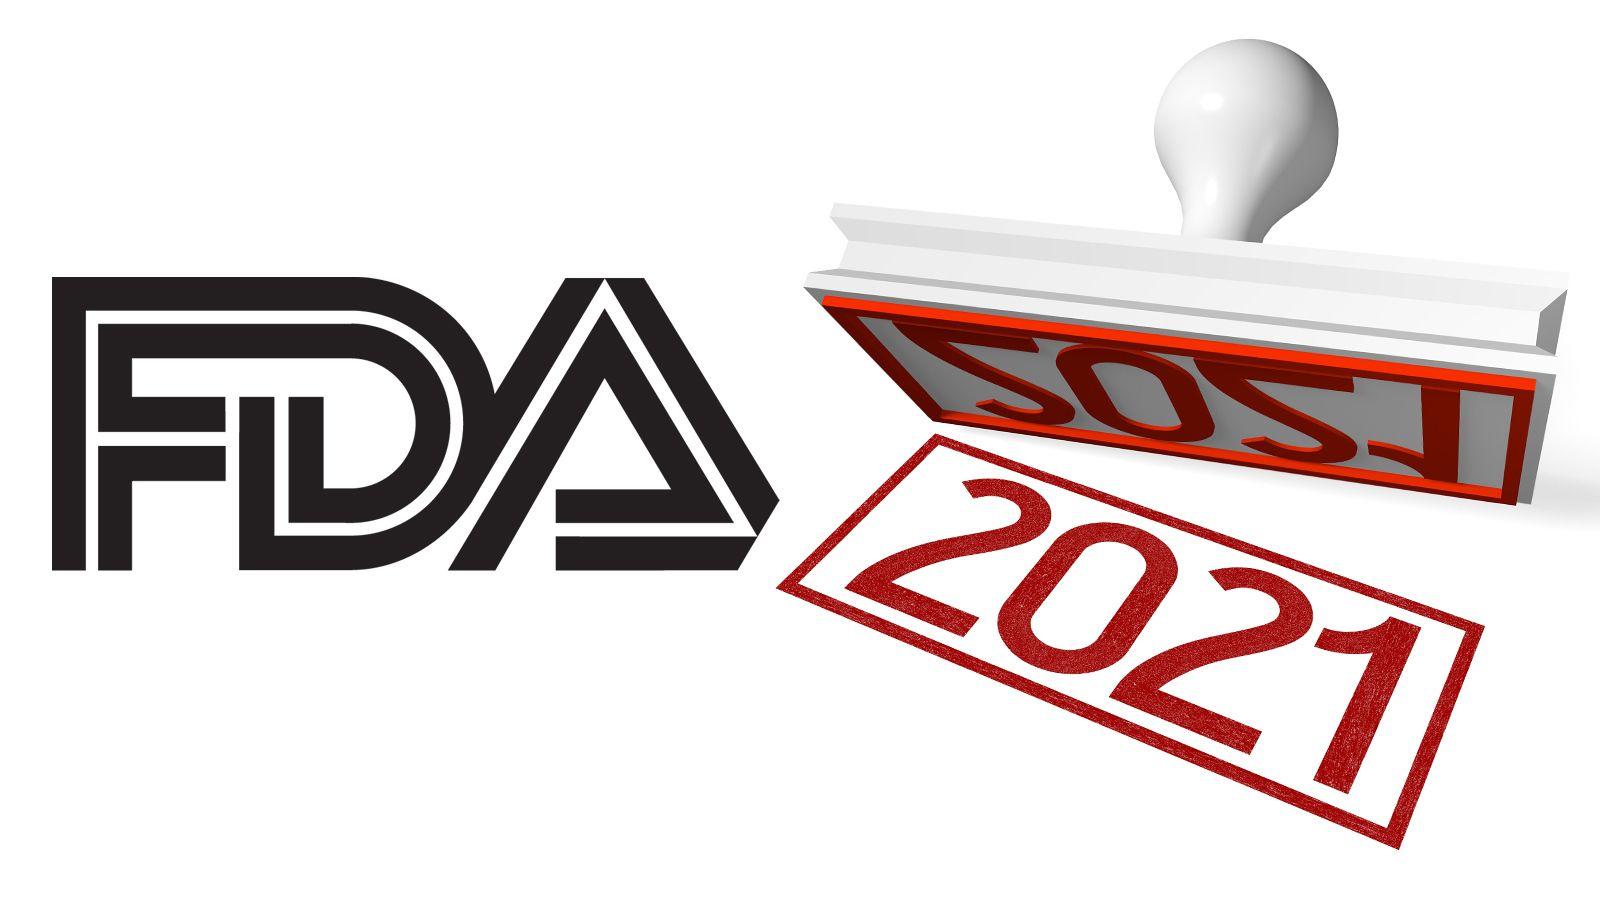 FDA Official Logo - FDA Extends Deadline—Will Reconsider Premium Cigars